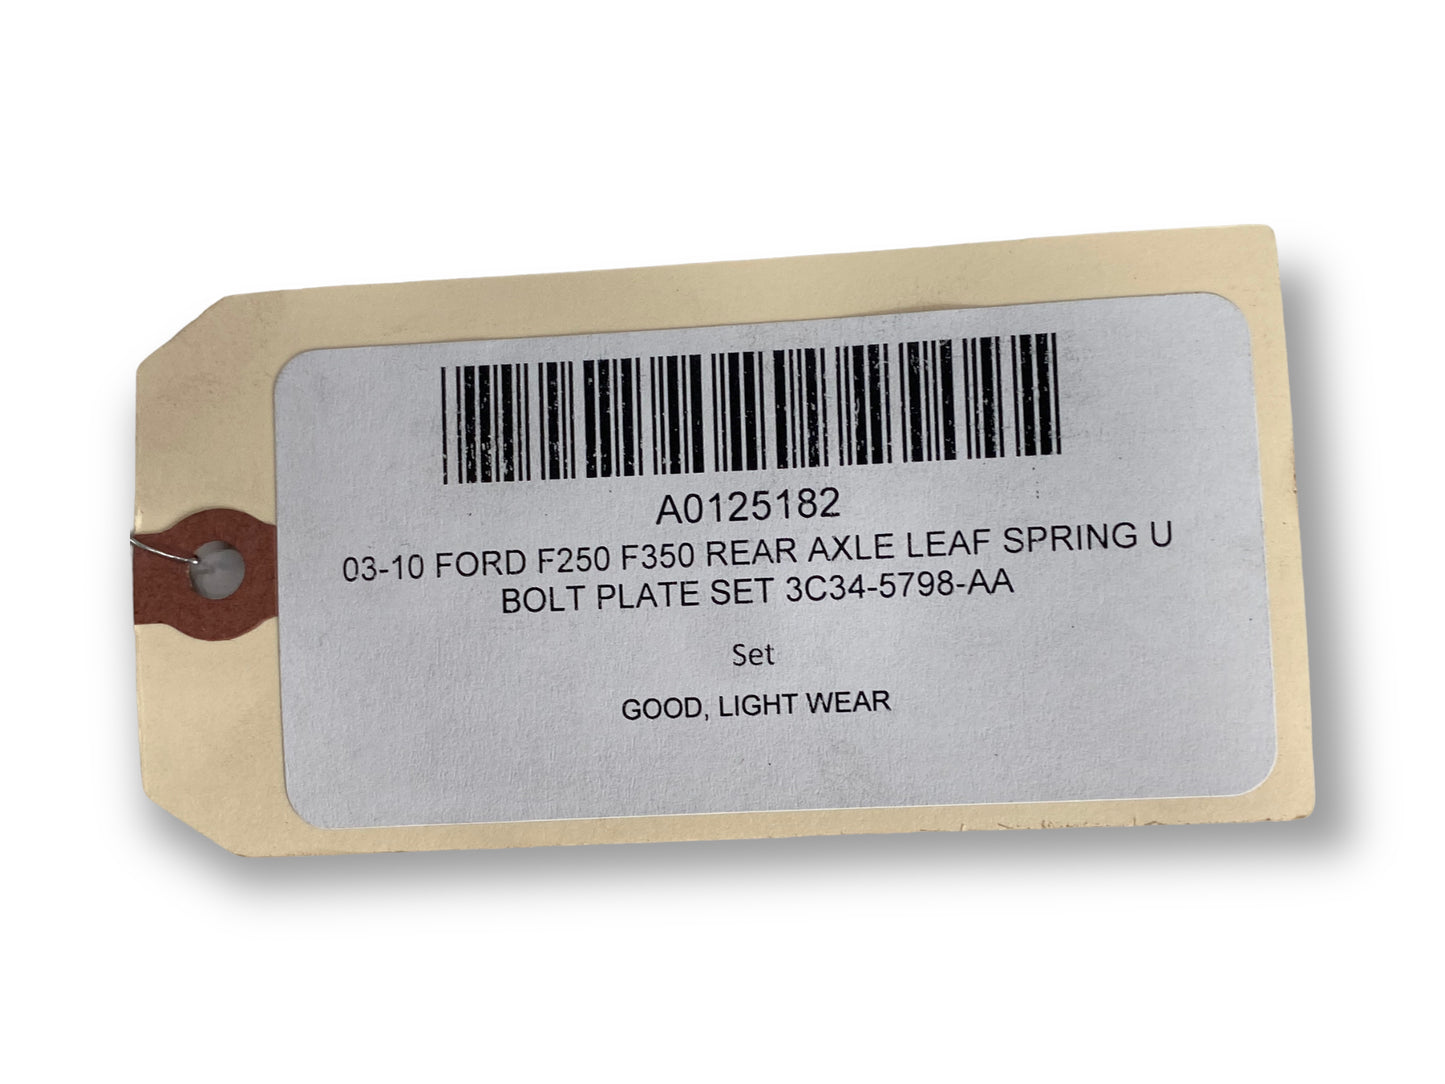 99-10 Ford F250 F350 Rear Axle Leaf Spring U Bolt Plate Set 3C34-5798-Aa